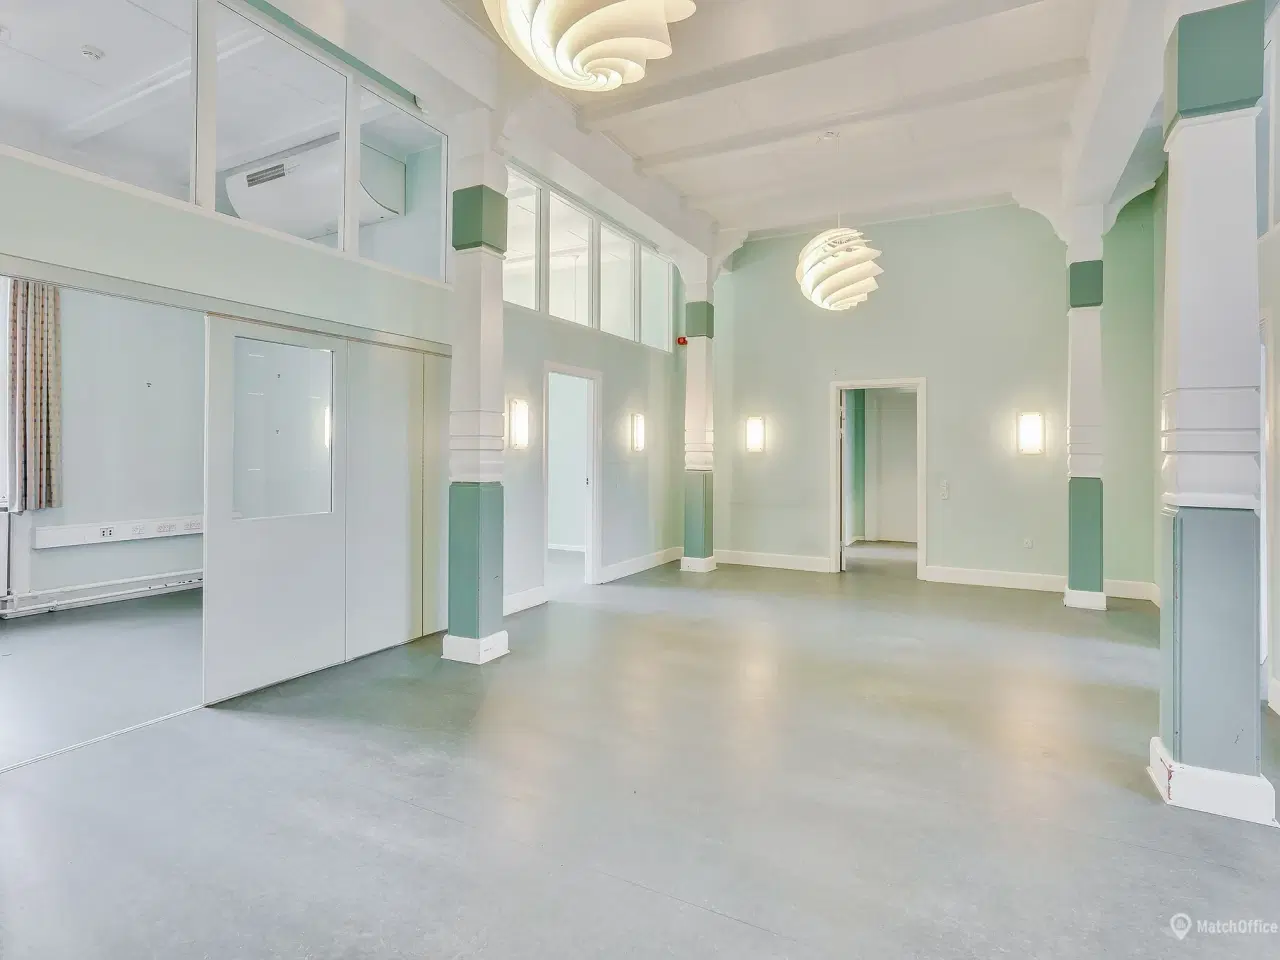 Billede 10 - Spændende kontorlokaler ved Indkøbscentret BROEN, i Esbjerg.